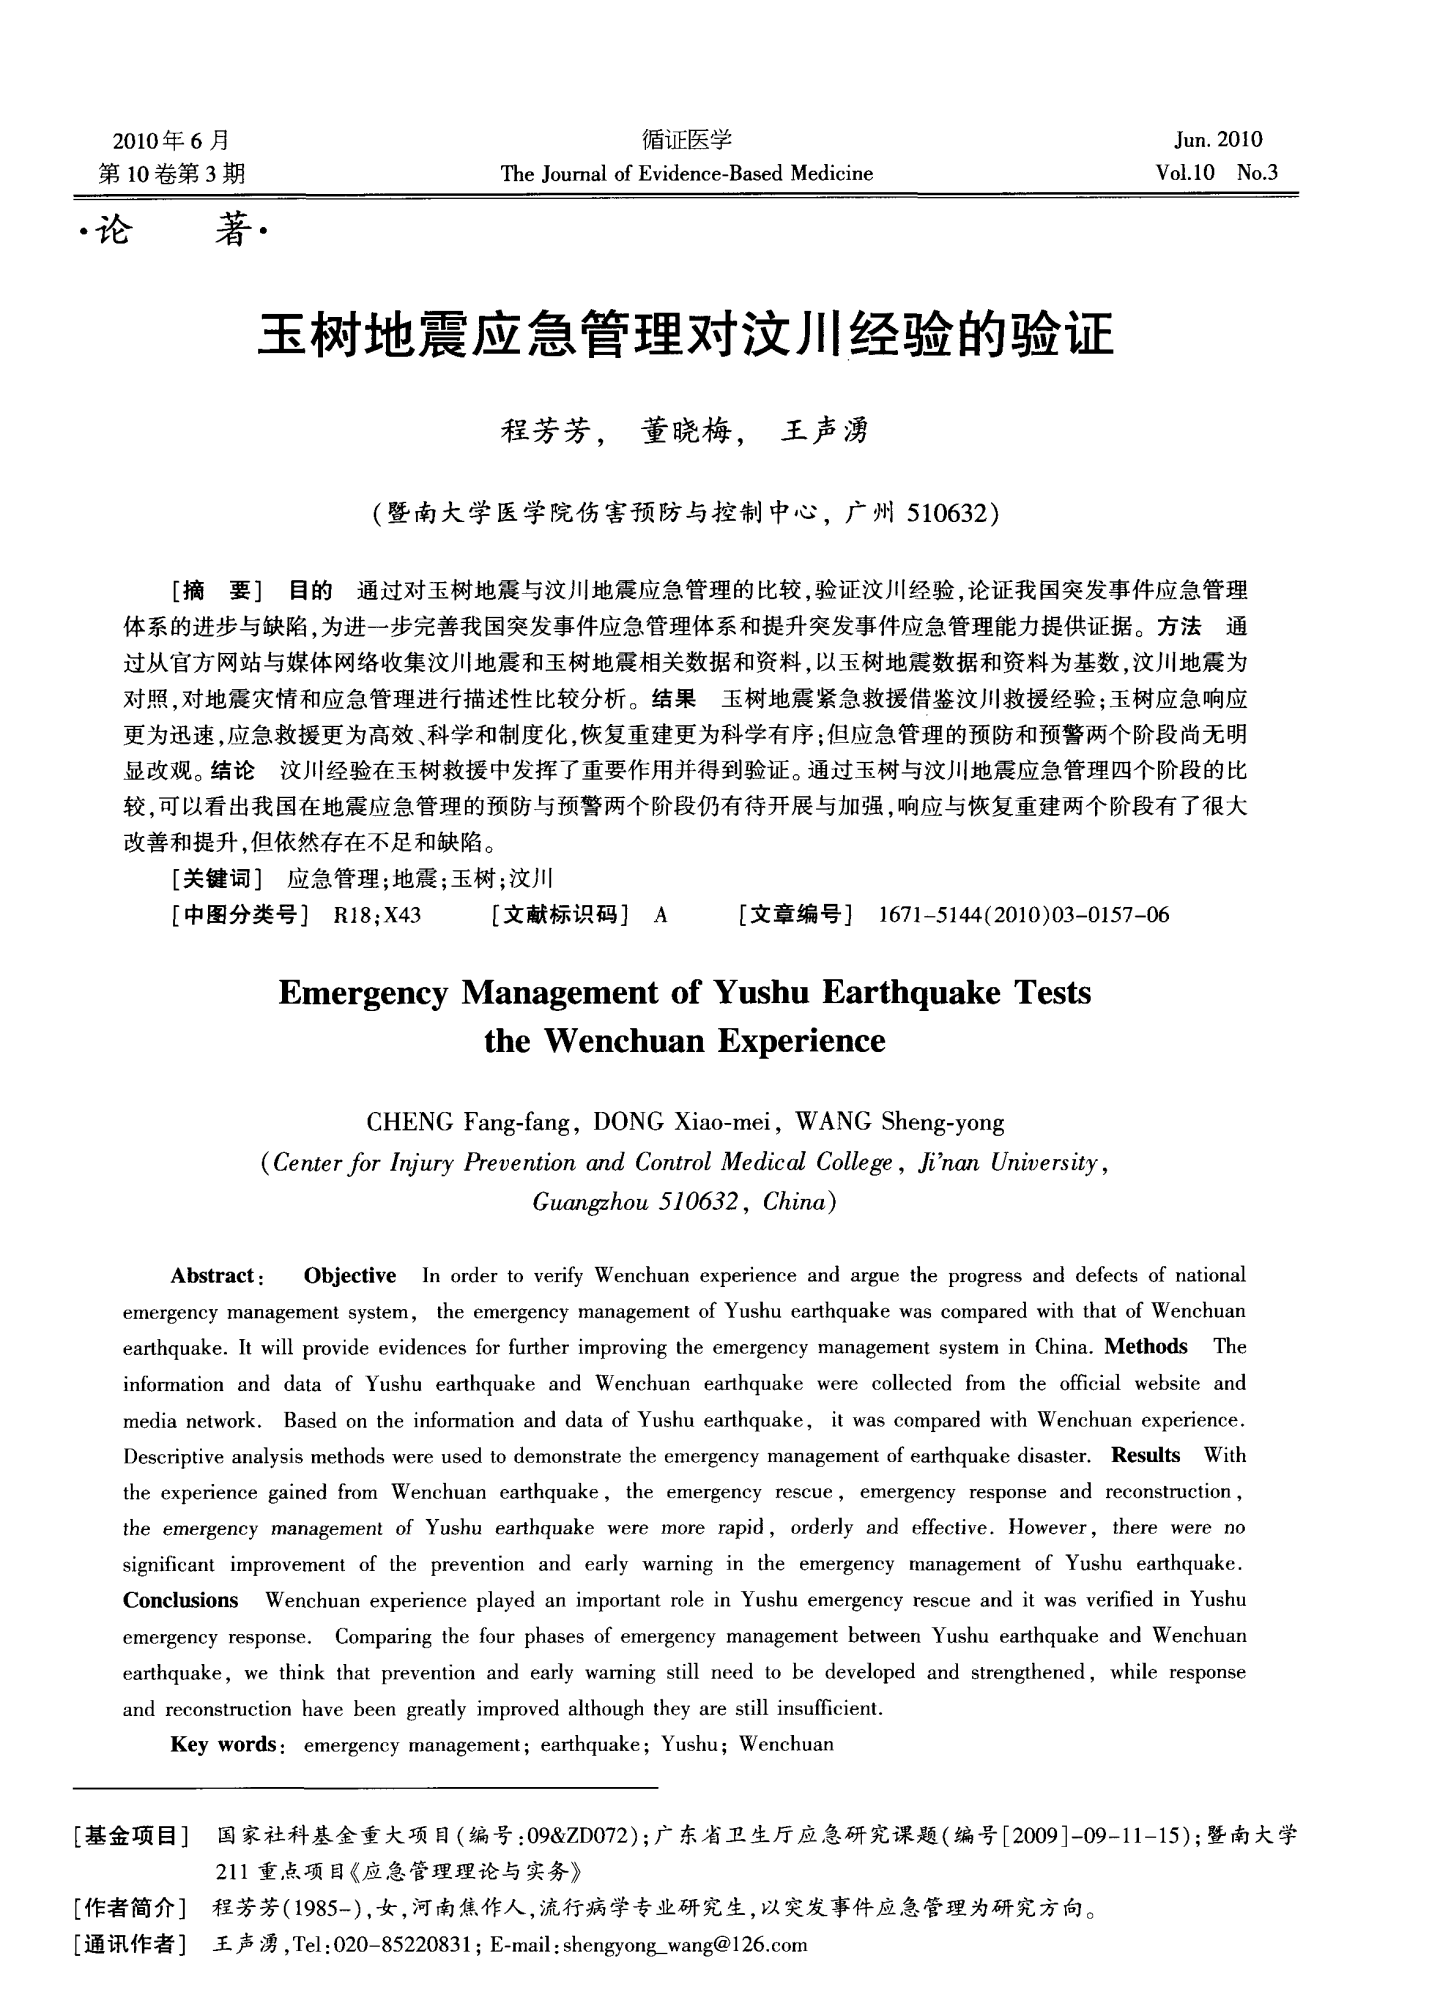 玉树地震应急管理对汶川经验的验证